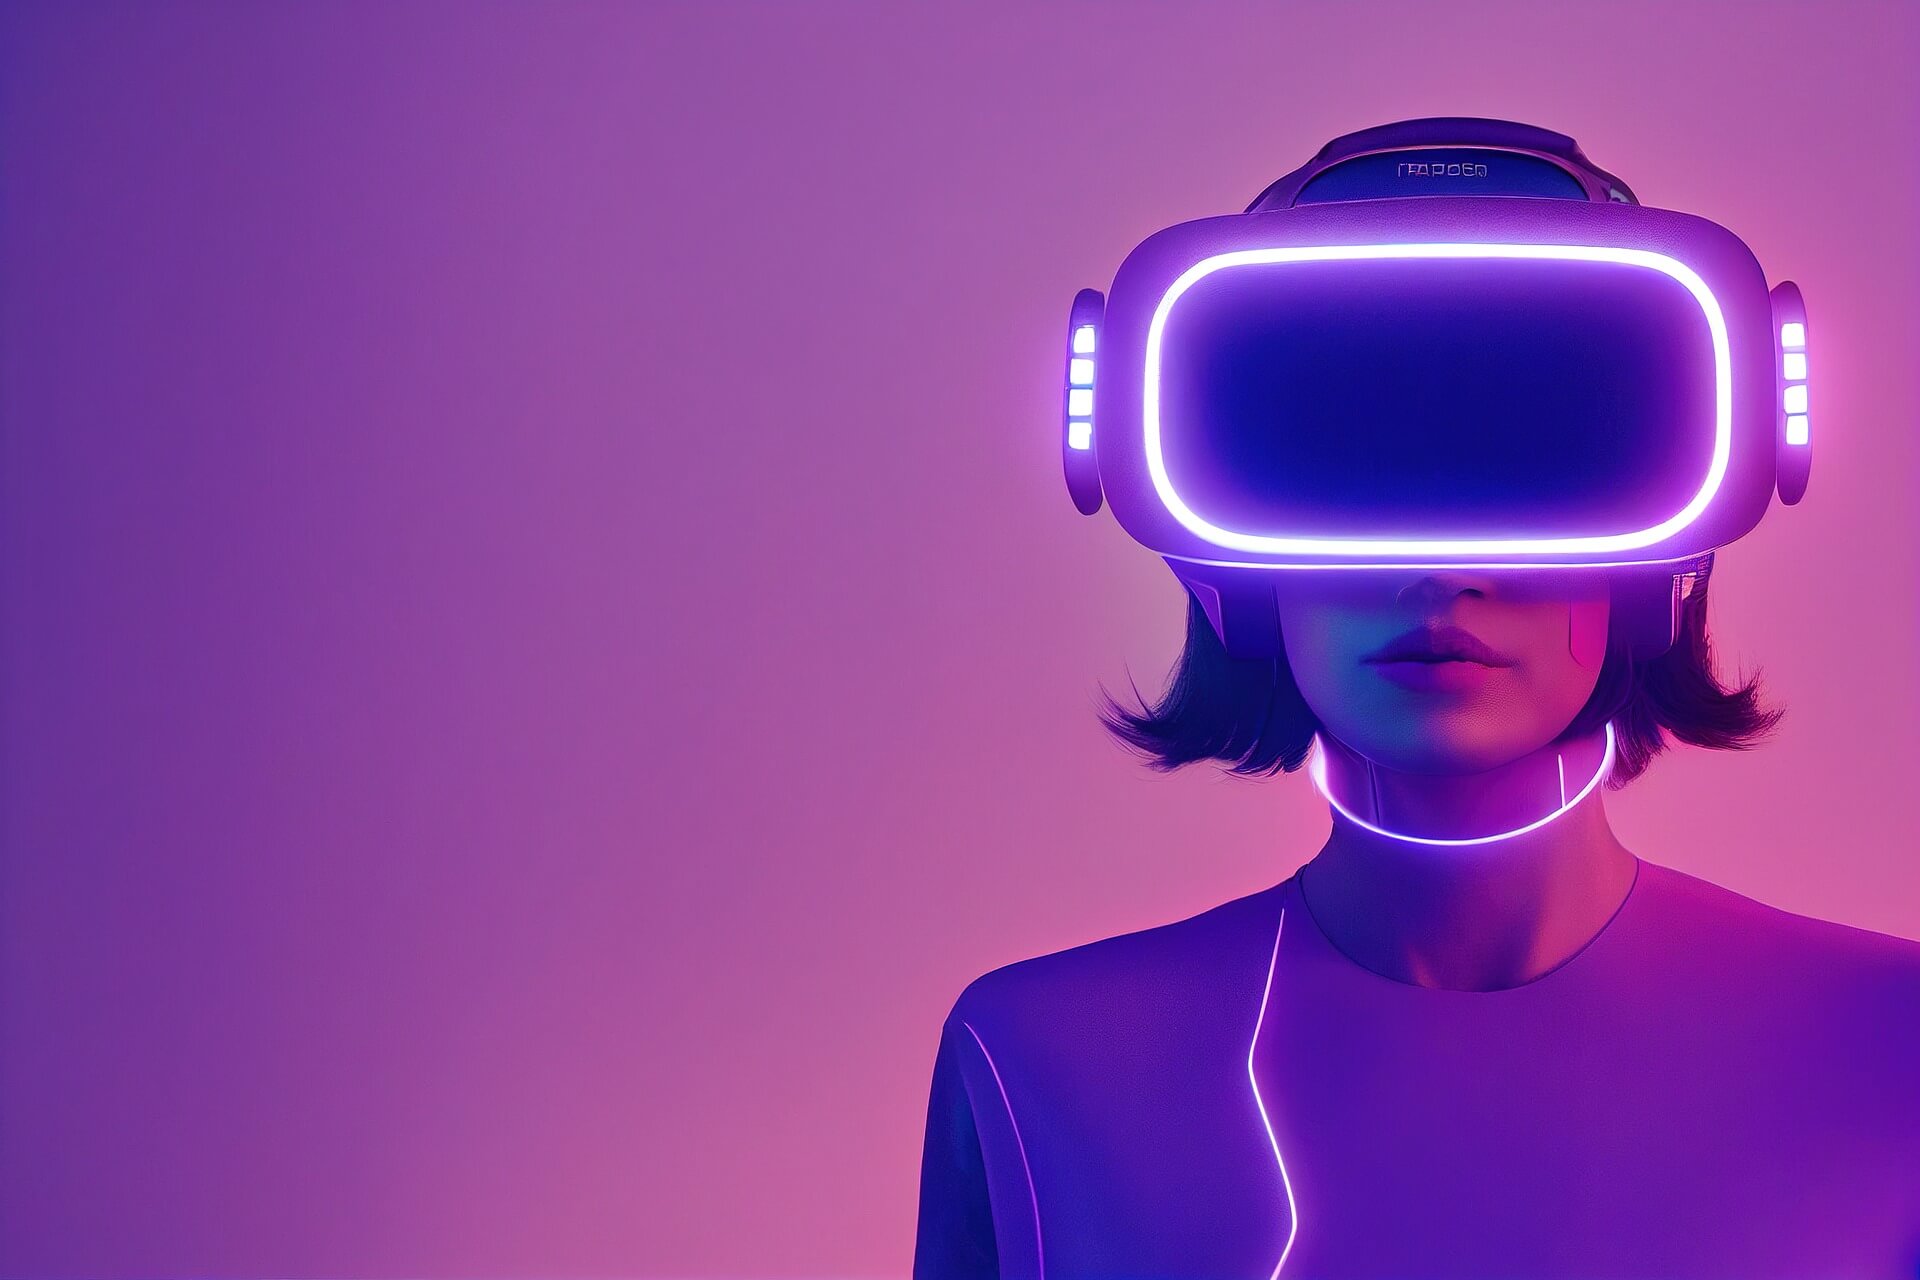 图片展示一位女性戴着虚拟现实头盔，紫色调背景，科技感十足，未来风格显著。